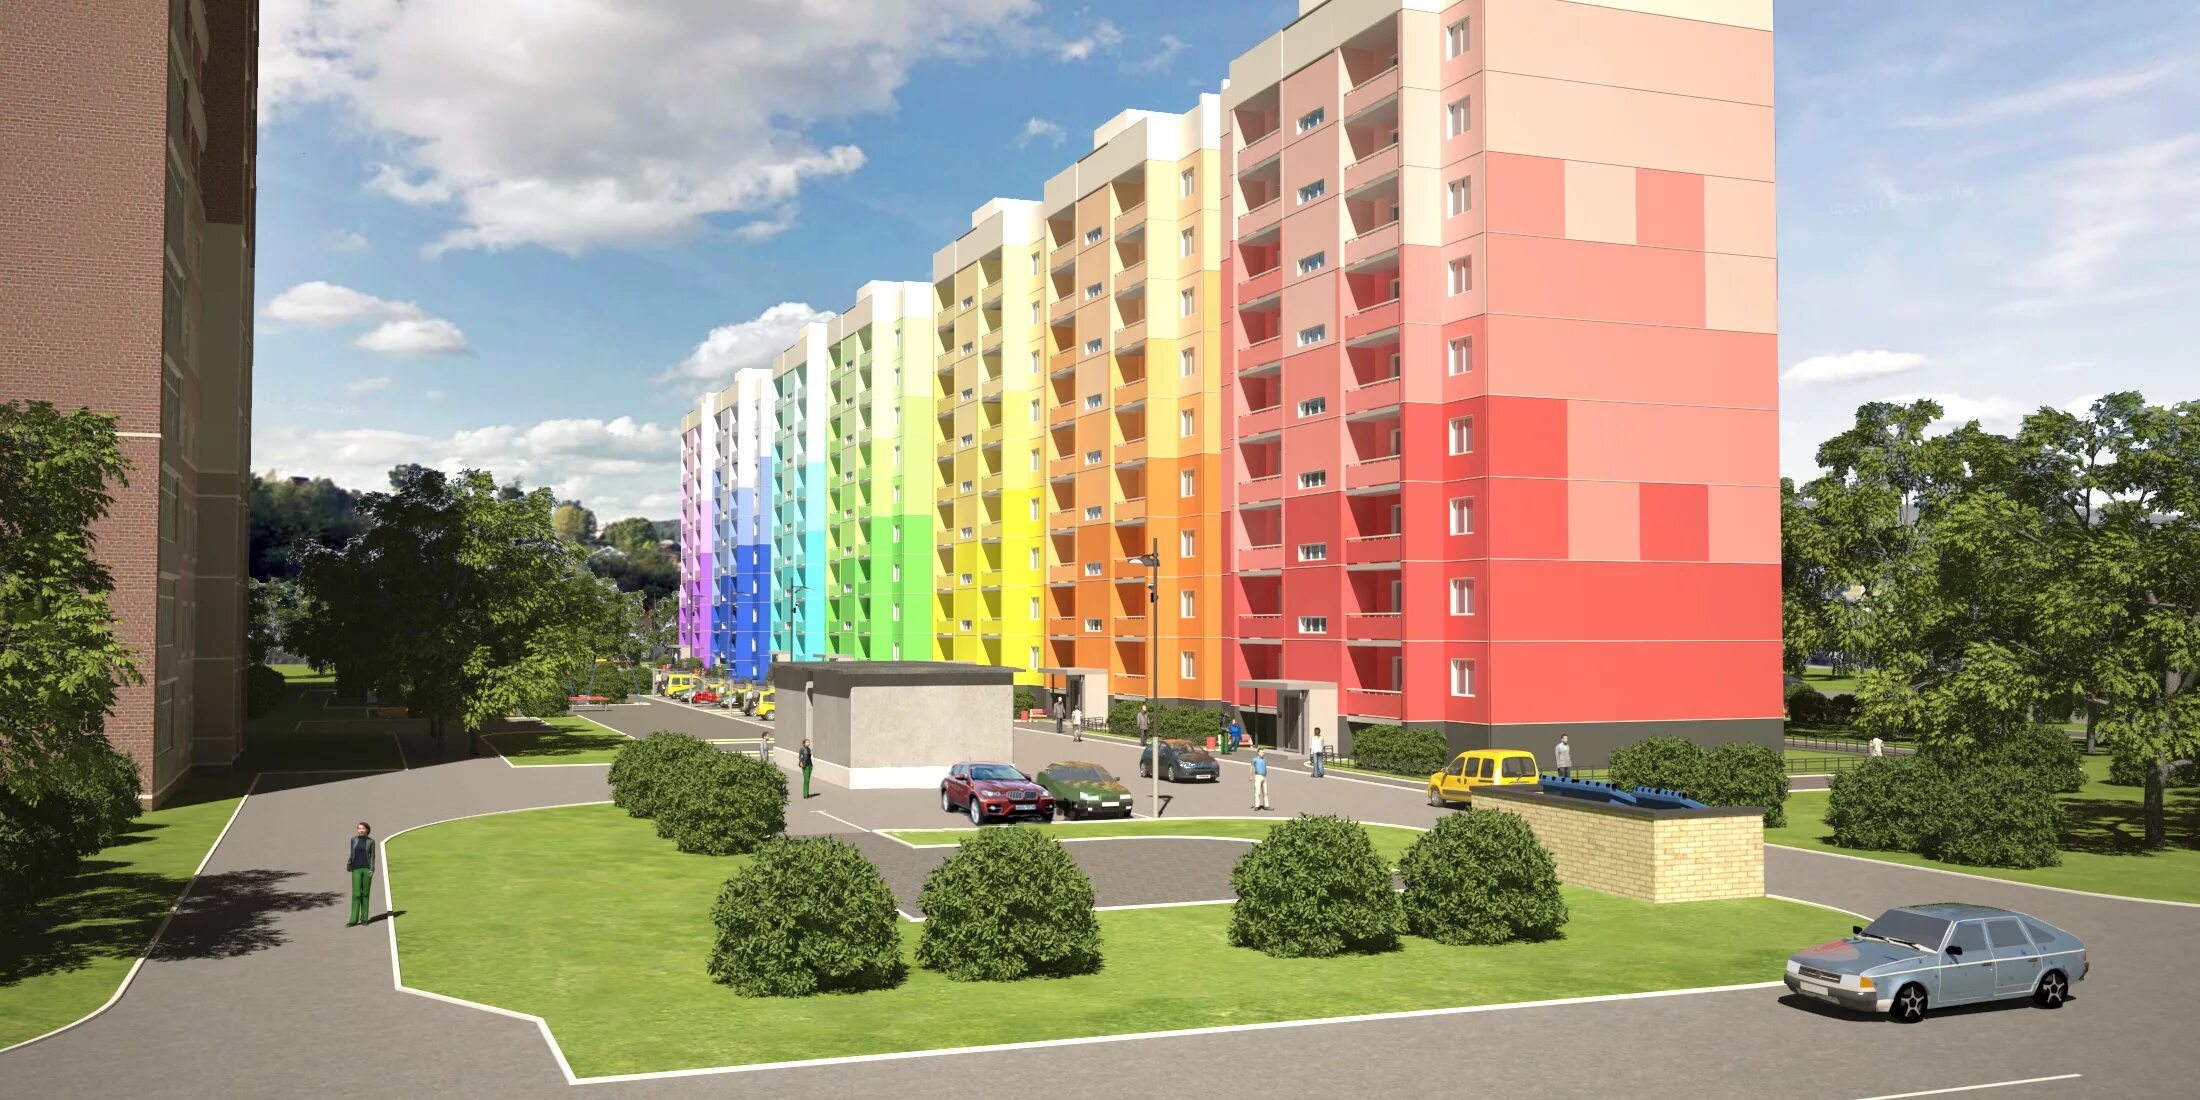 Цветовое решение фасадов жилых домов. Фасады многоэтажных домов цветовые решения. Цветовое решение фасадов многоэтажных жилых домов. Цветные фасады многоэтажных домов.